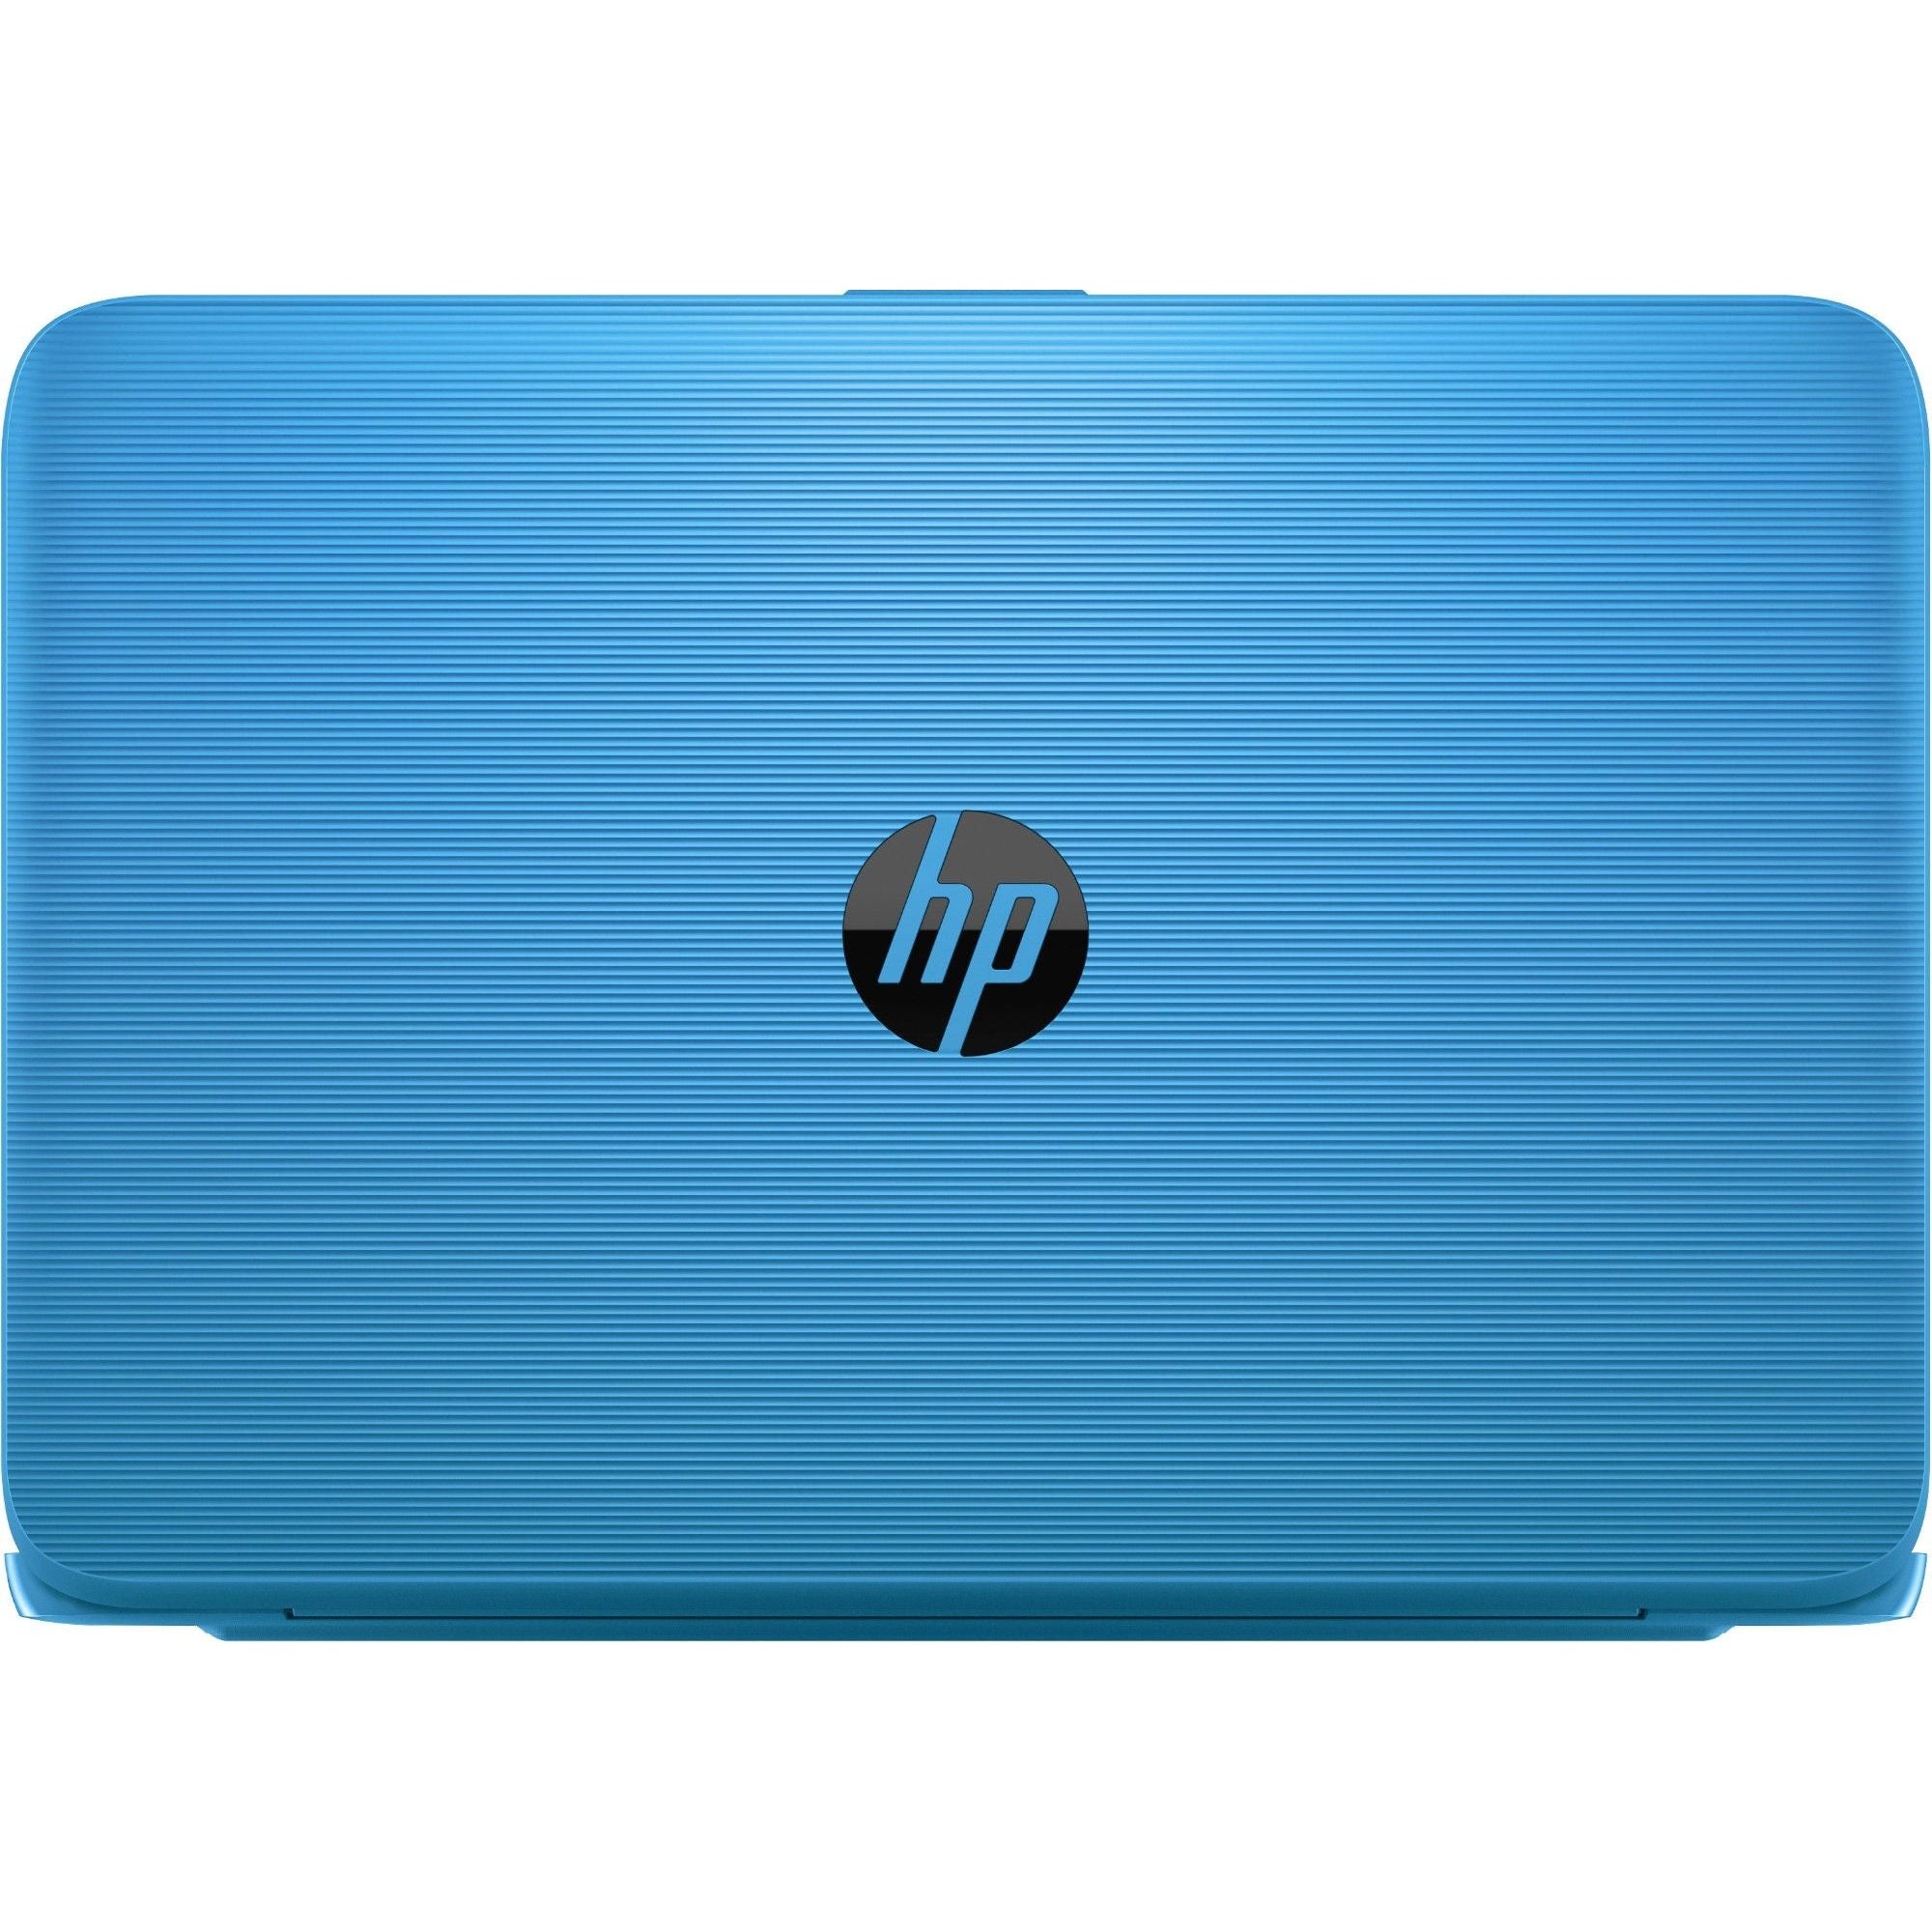 HP Stream 11-AH005NA, 11.6" INTEL Celeron N3060 @ 1.60GHZ, 2GB RAM, 32GB SSD, Win 10 - Blue